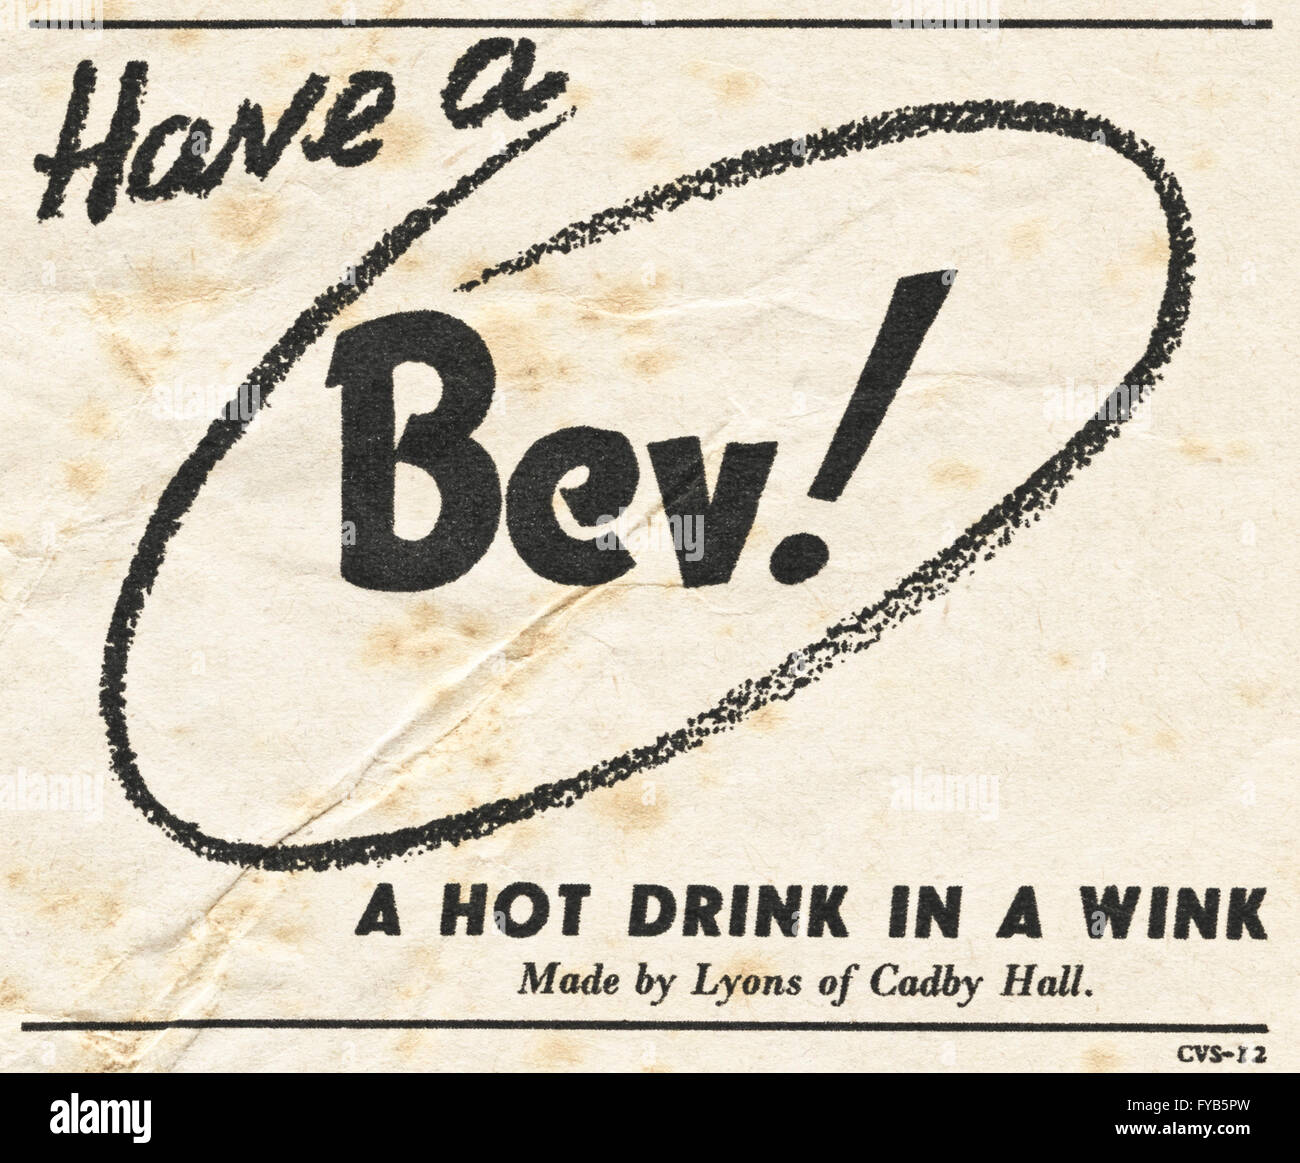 1940s originale vecchia vintage magazine annuncio pubblicitario dal WWW2 immediato dopoguerra datato 1947. Pubblicità Pubblicità Bev bevanda calda da Lione Foto Stock